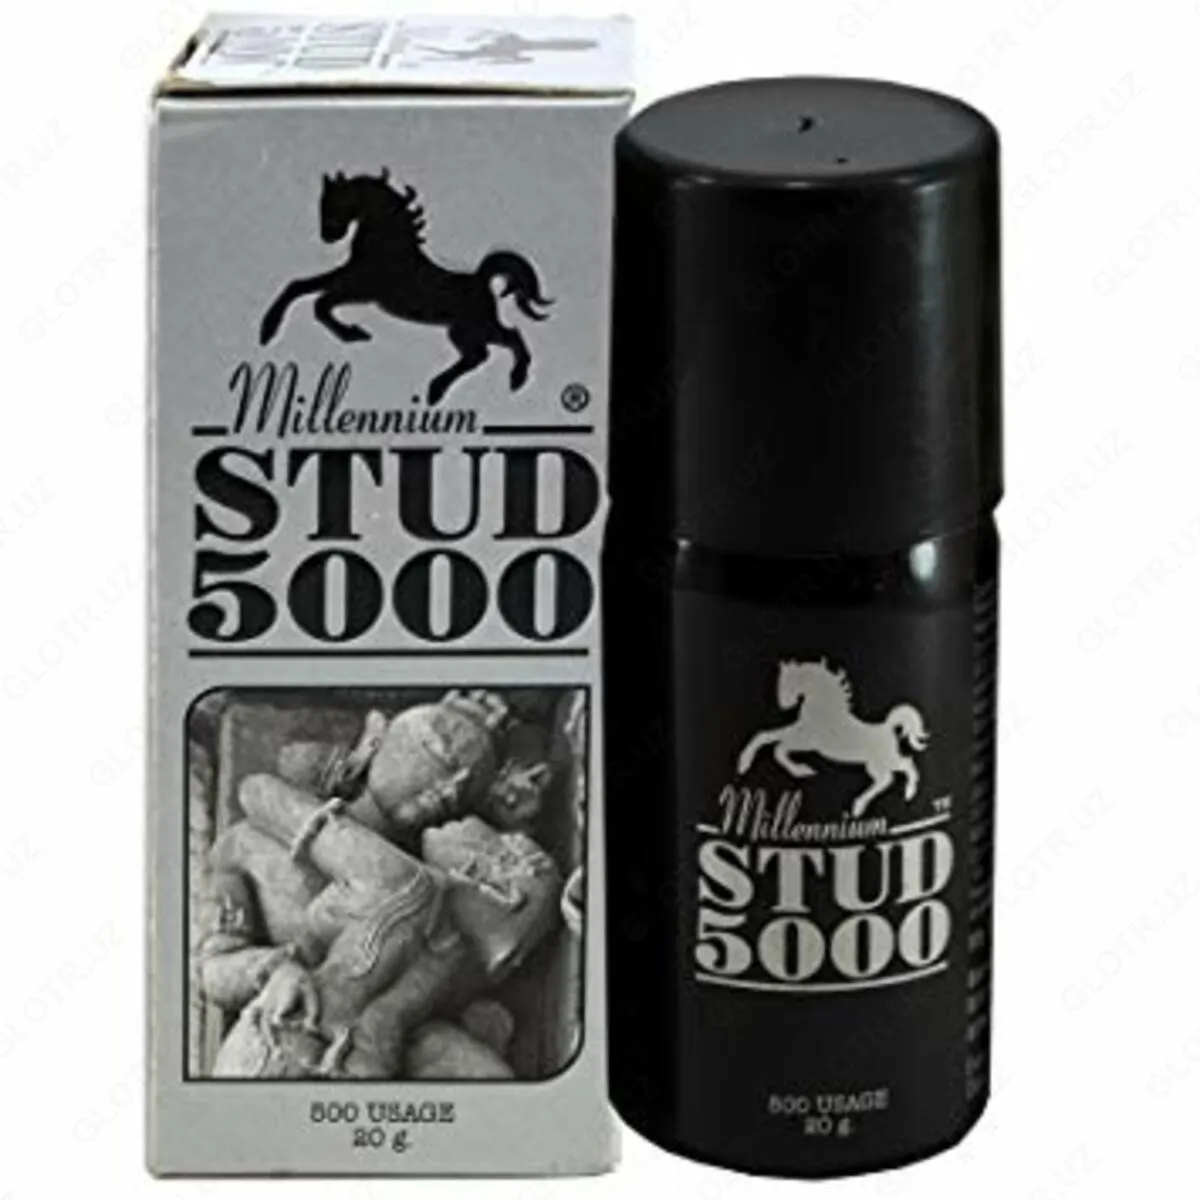 Spray Stud 5000 erkaklar uchun (Potentsiyani oshirish uchun sprey)#1